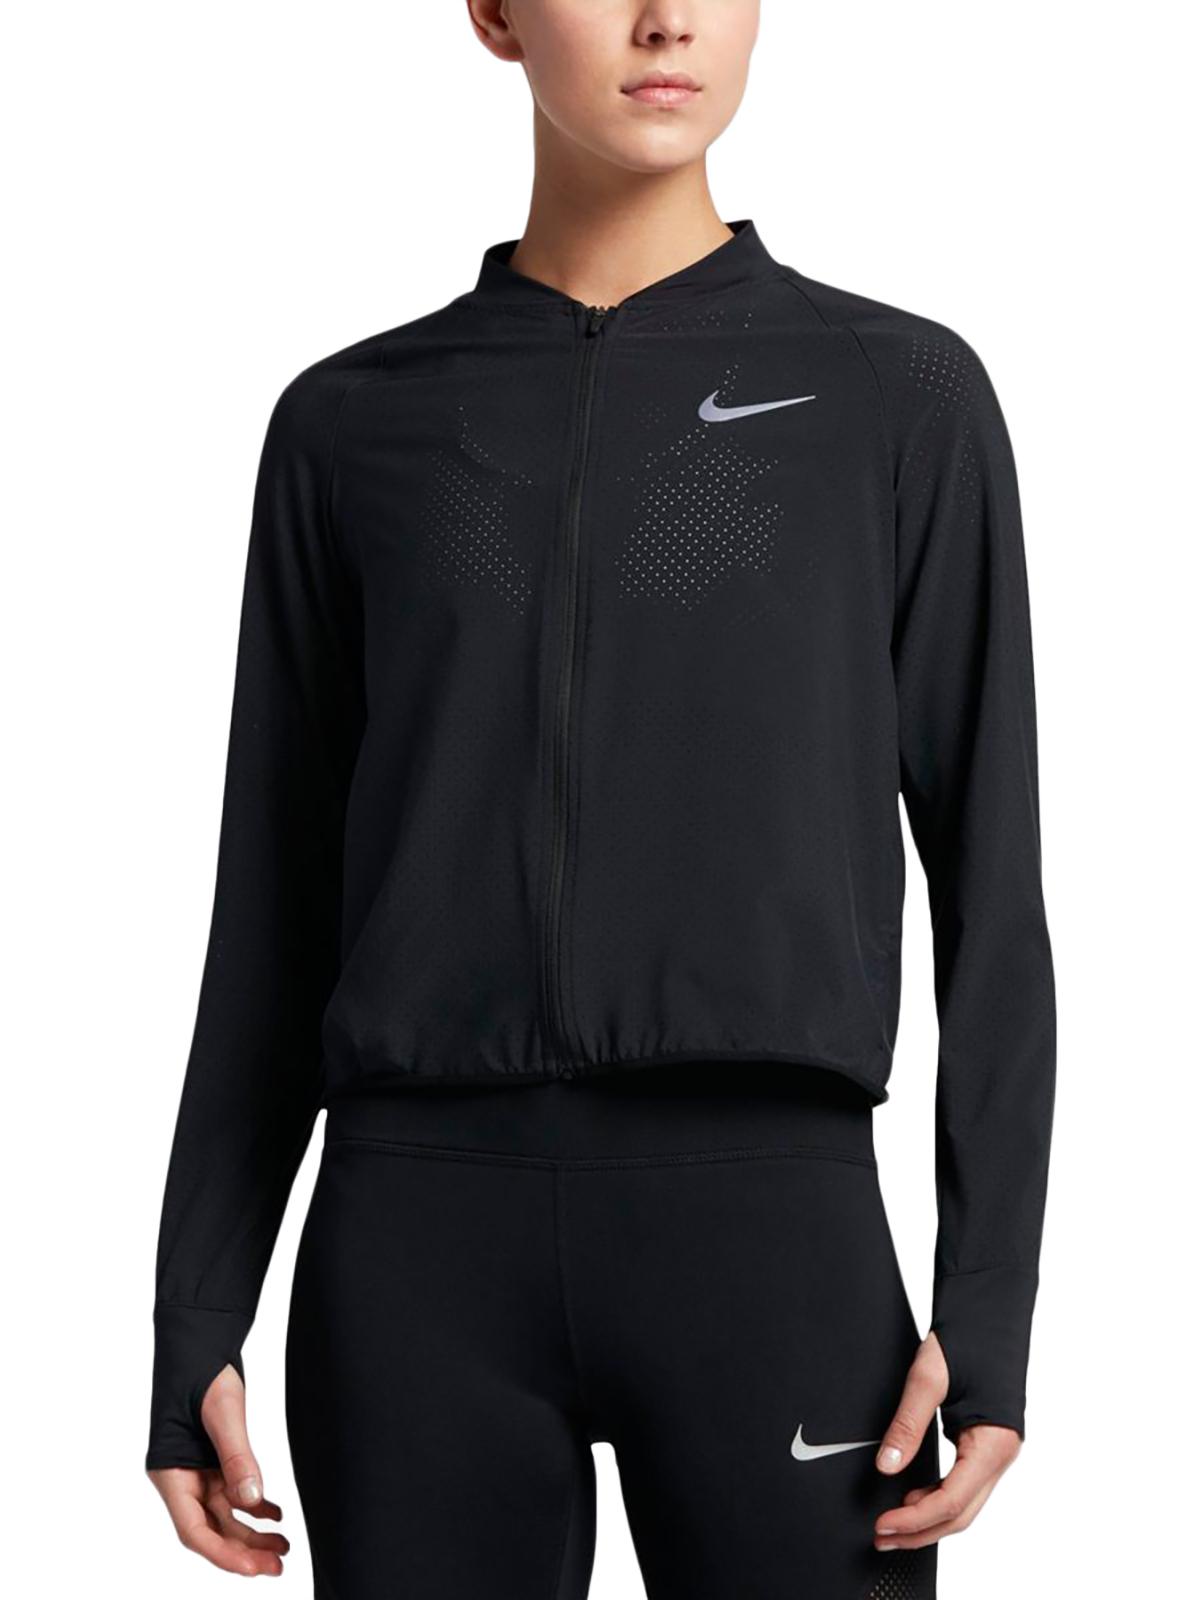 Nike Womens Perforated Bomber Athletic Jacket - image 1 of 1